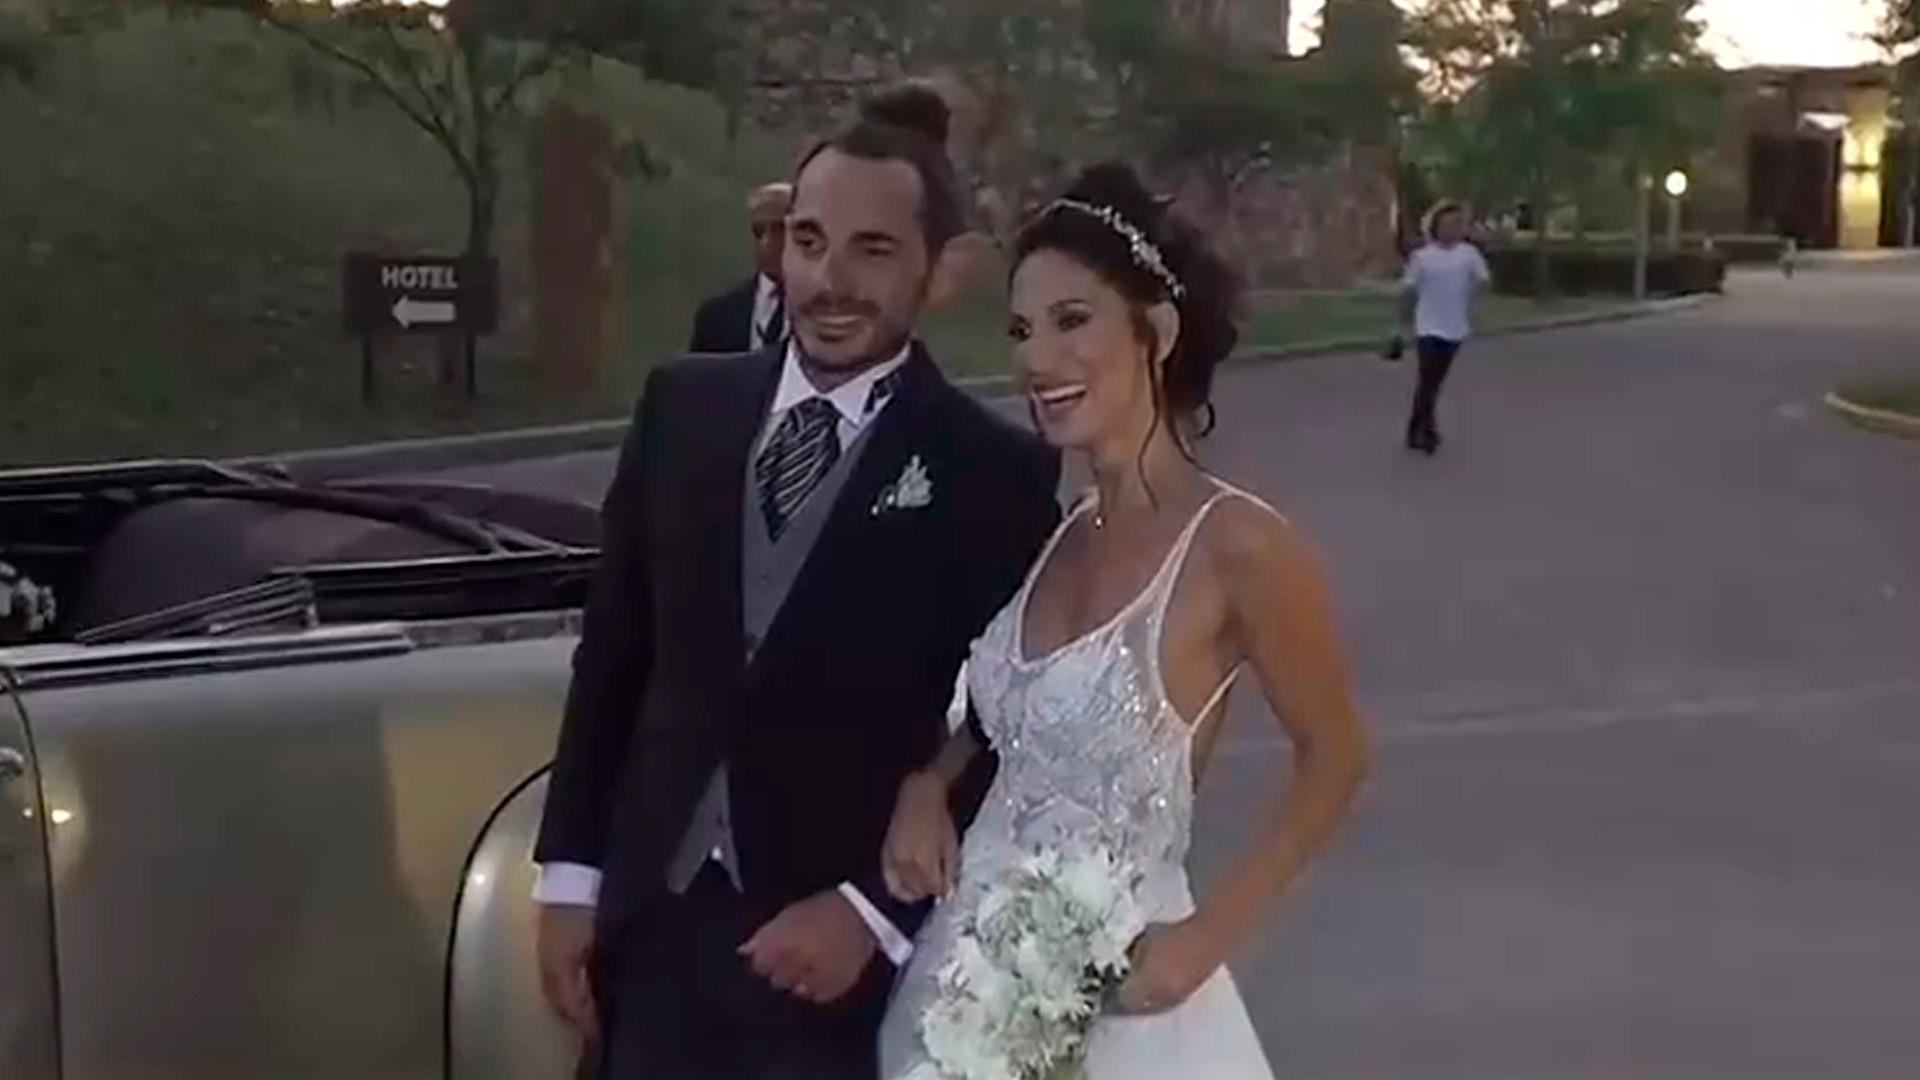 La boda de Silvina Escudero y Federico (Foto: Captura América)